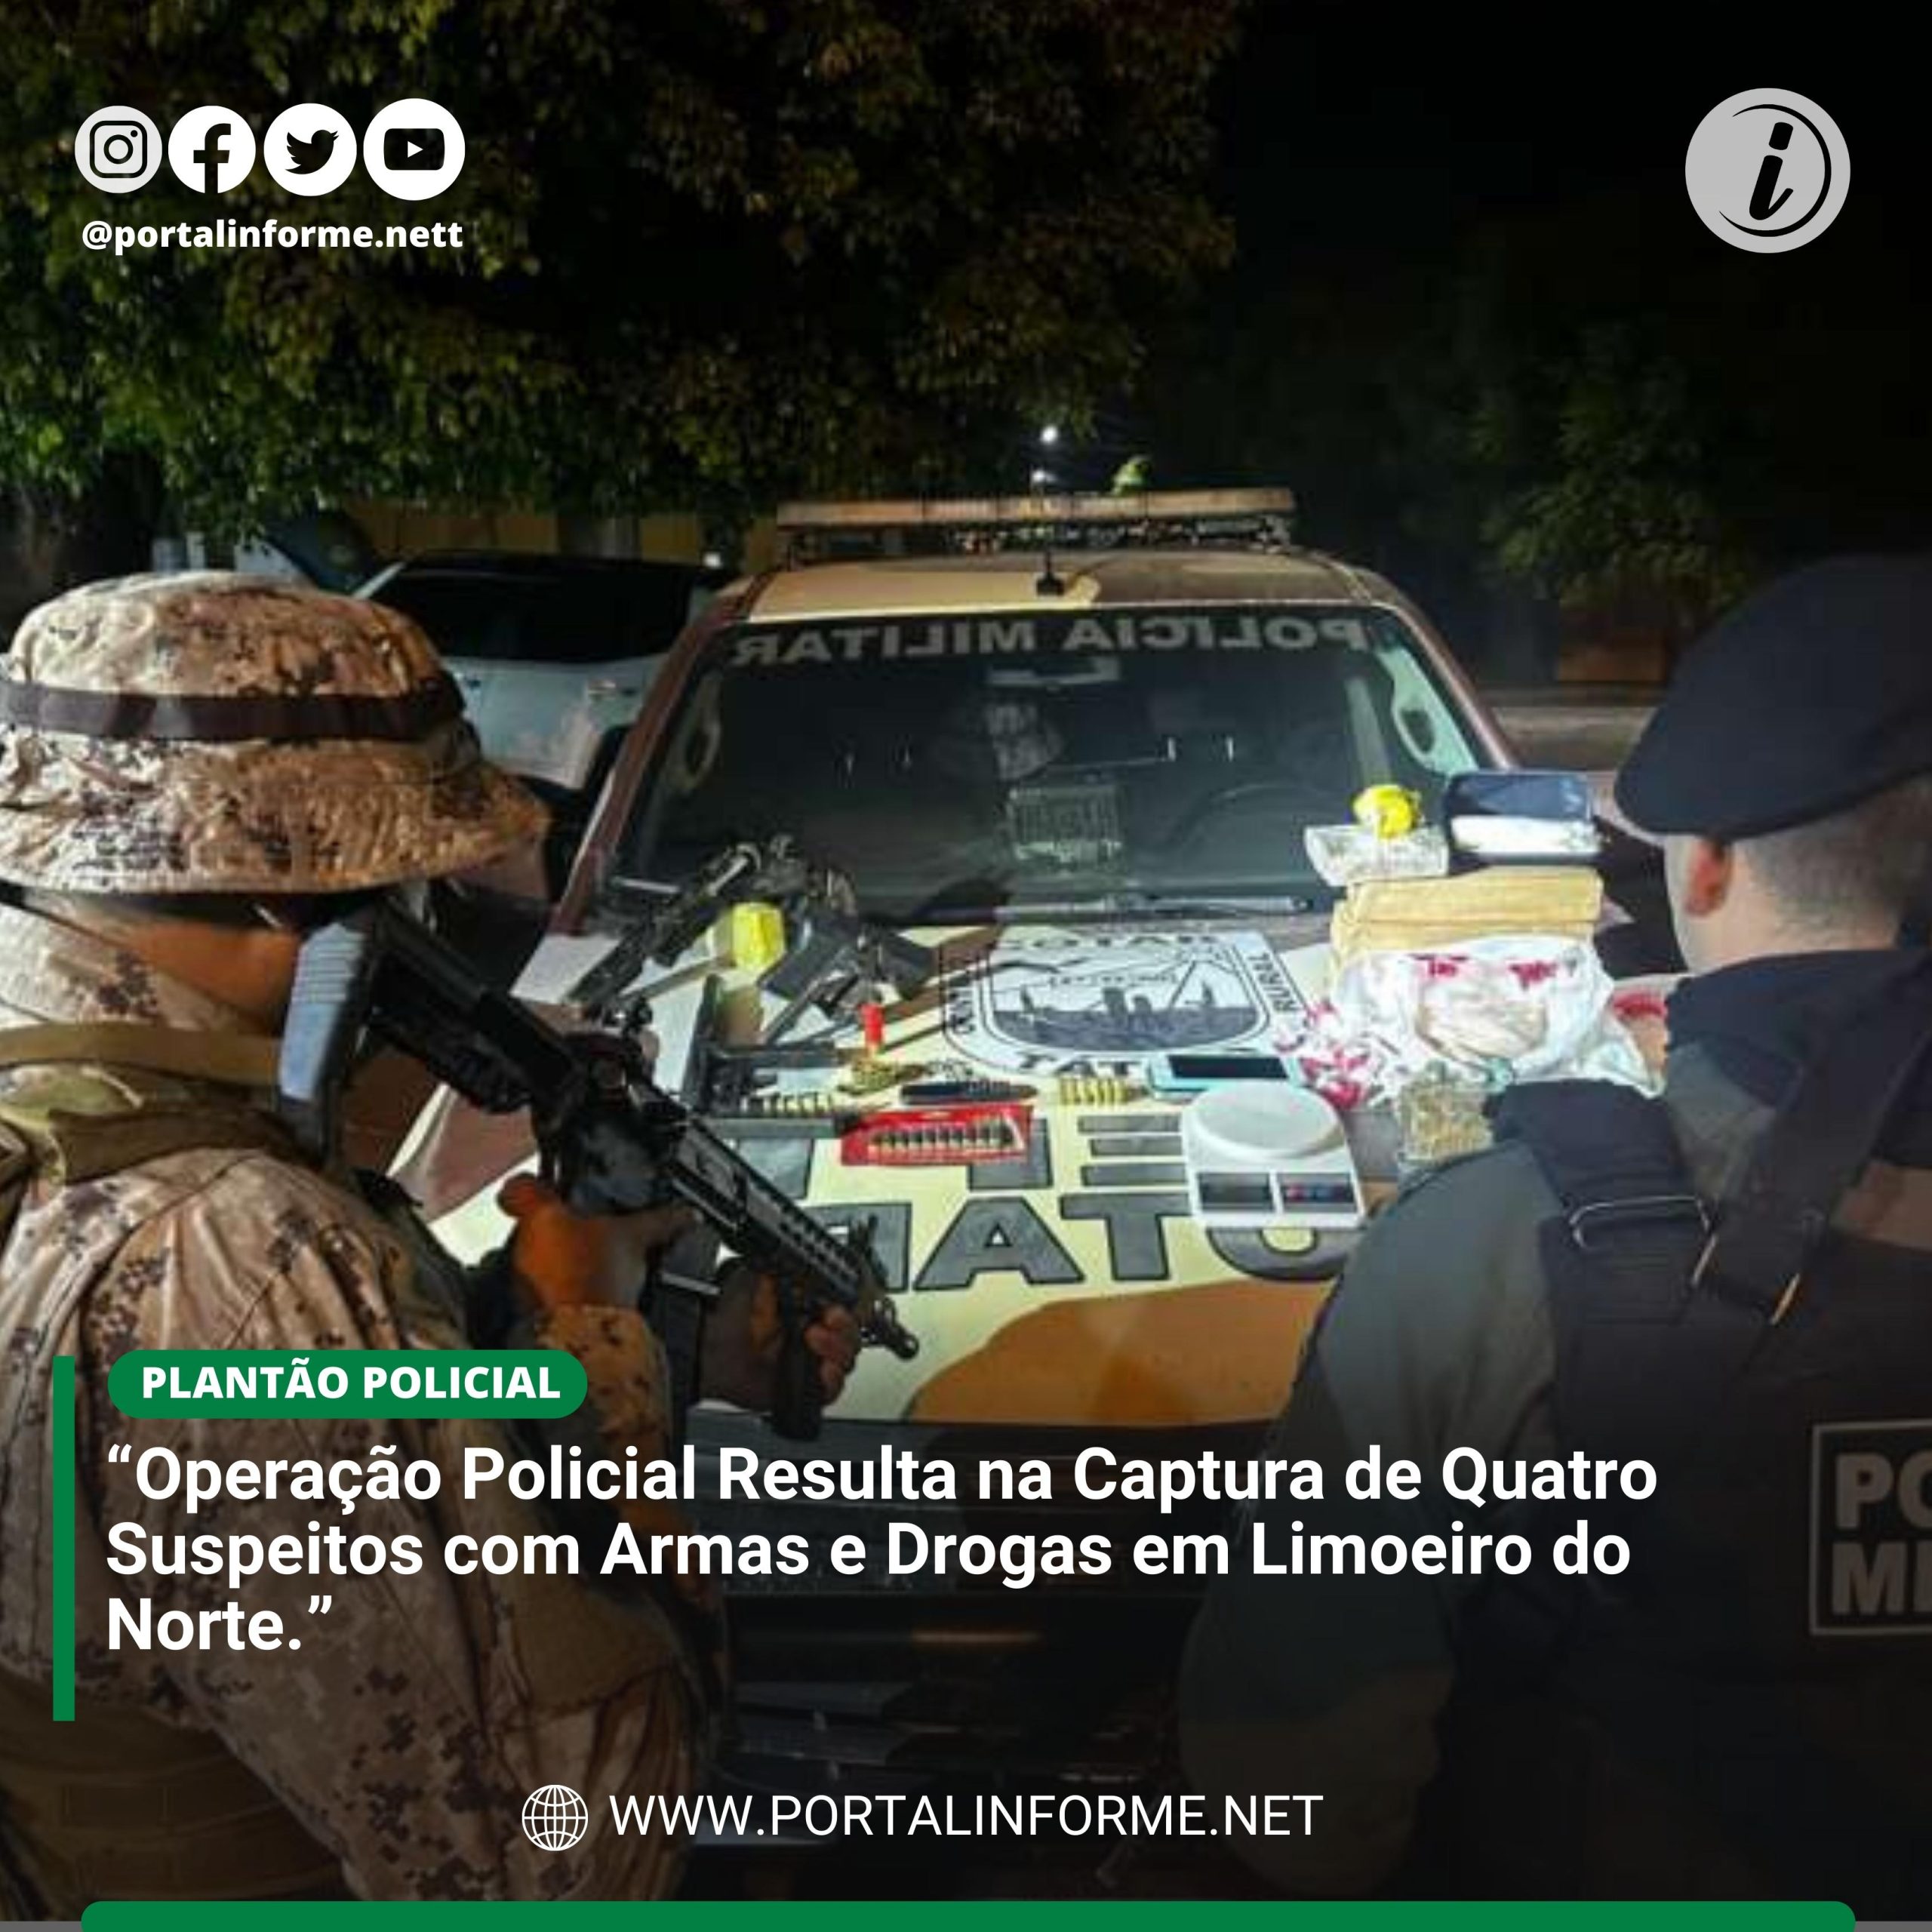 Operacao-Policial-Resulta-na-Captura-de-Quatro-Suspeitos-com-Armas-e-Drogas-em-Limoeiro-do-Norte-scaled.jpg